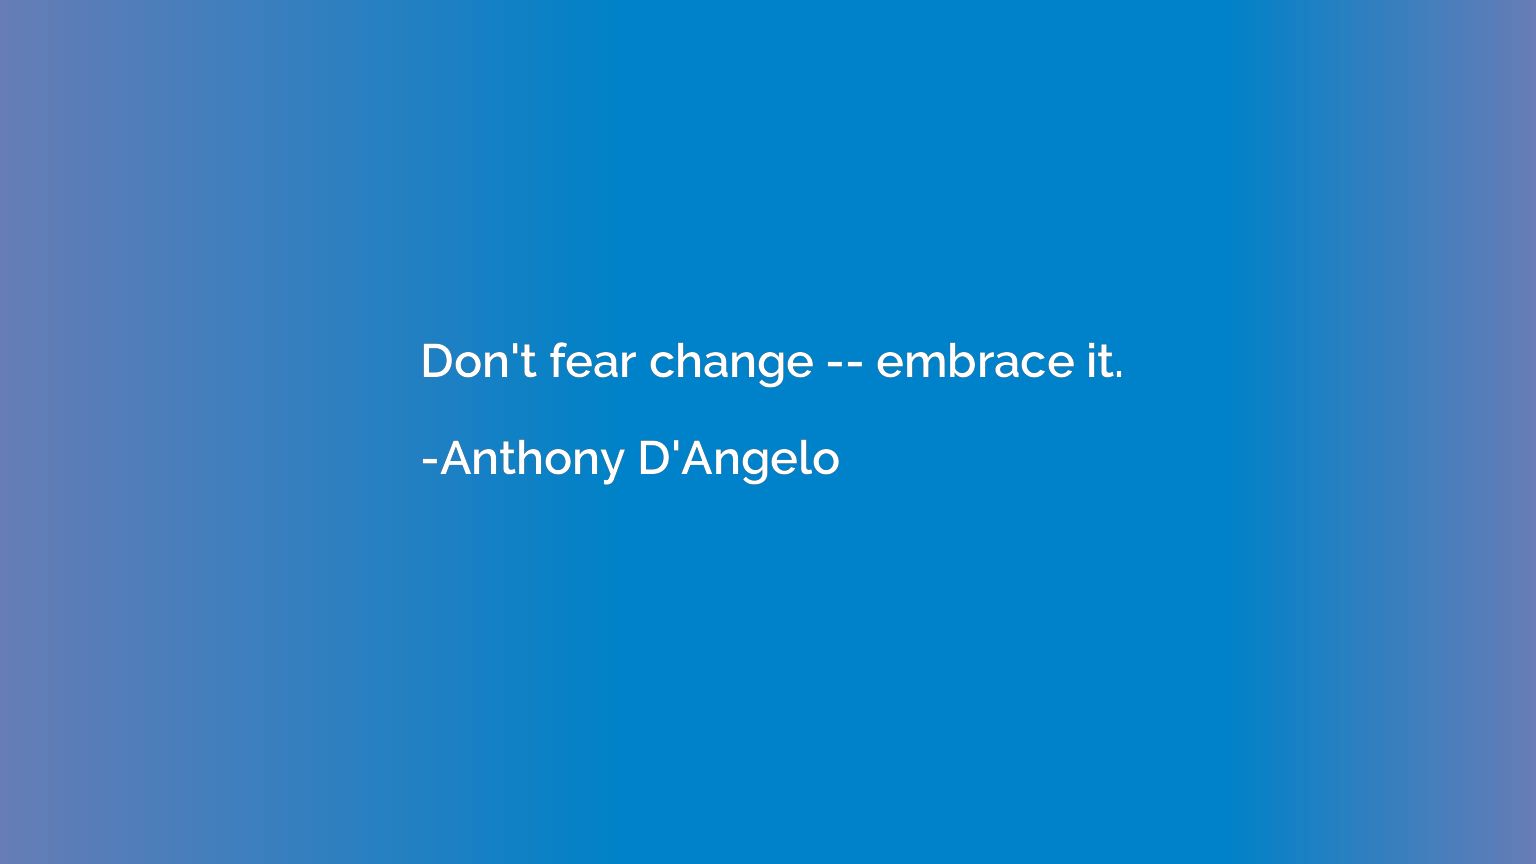 Don't fear change -- embrace it.